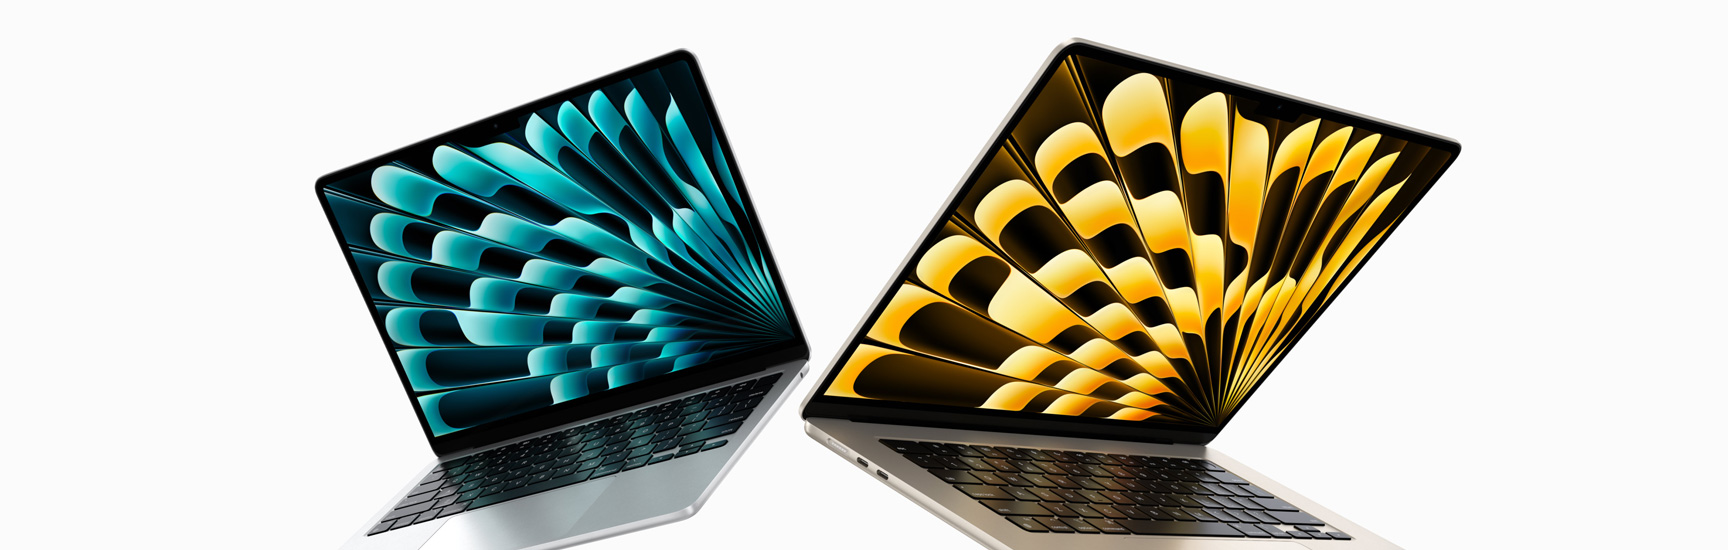 Félig felnyitott, ezüst- és csillagfényszínű 13 és 15 hüvelykes MacBook Air-modellek elölnézeti képe, amely jól érzékelteti a kijelzőméretek különbségét.